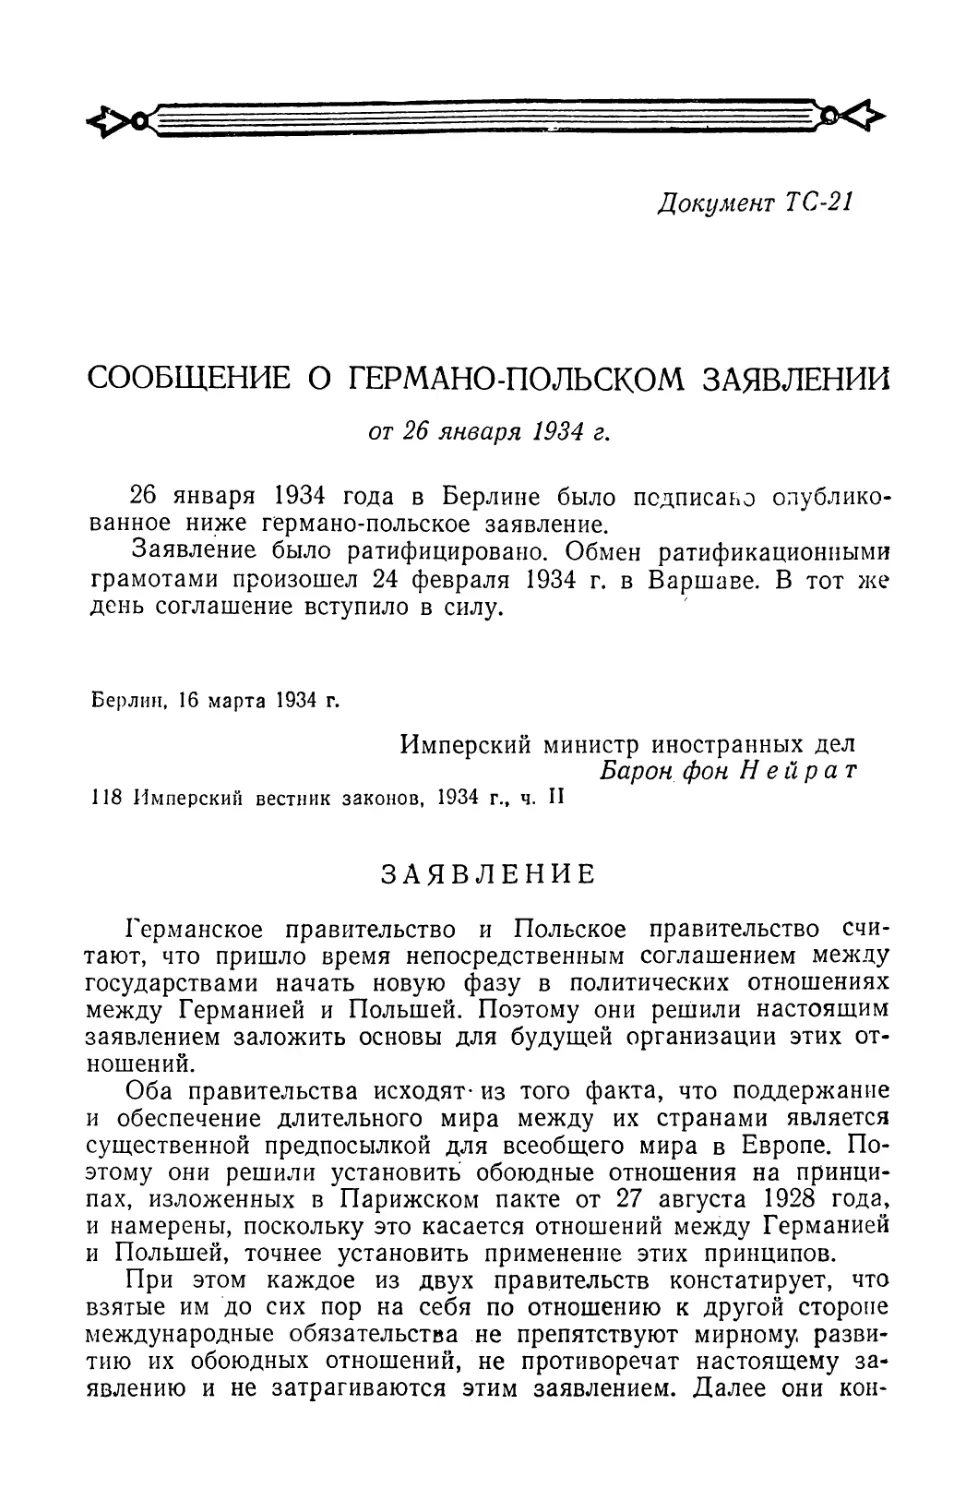 Сообщение о германо-польском заявлении от 26 января 1934 г.